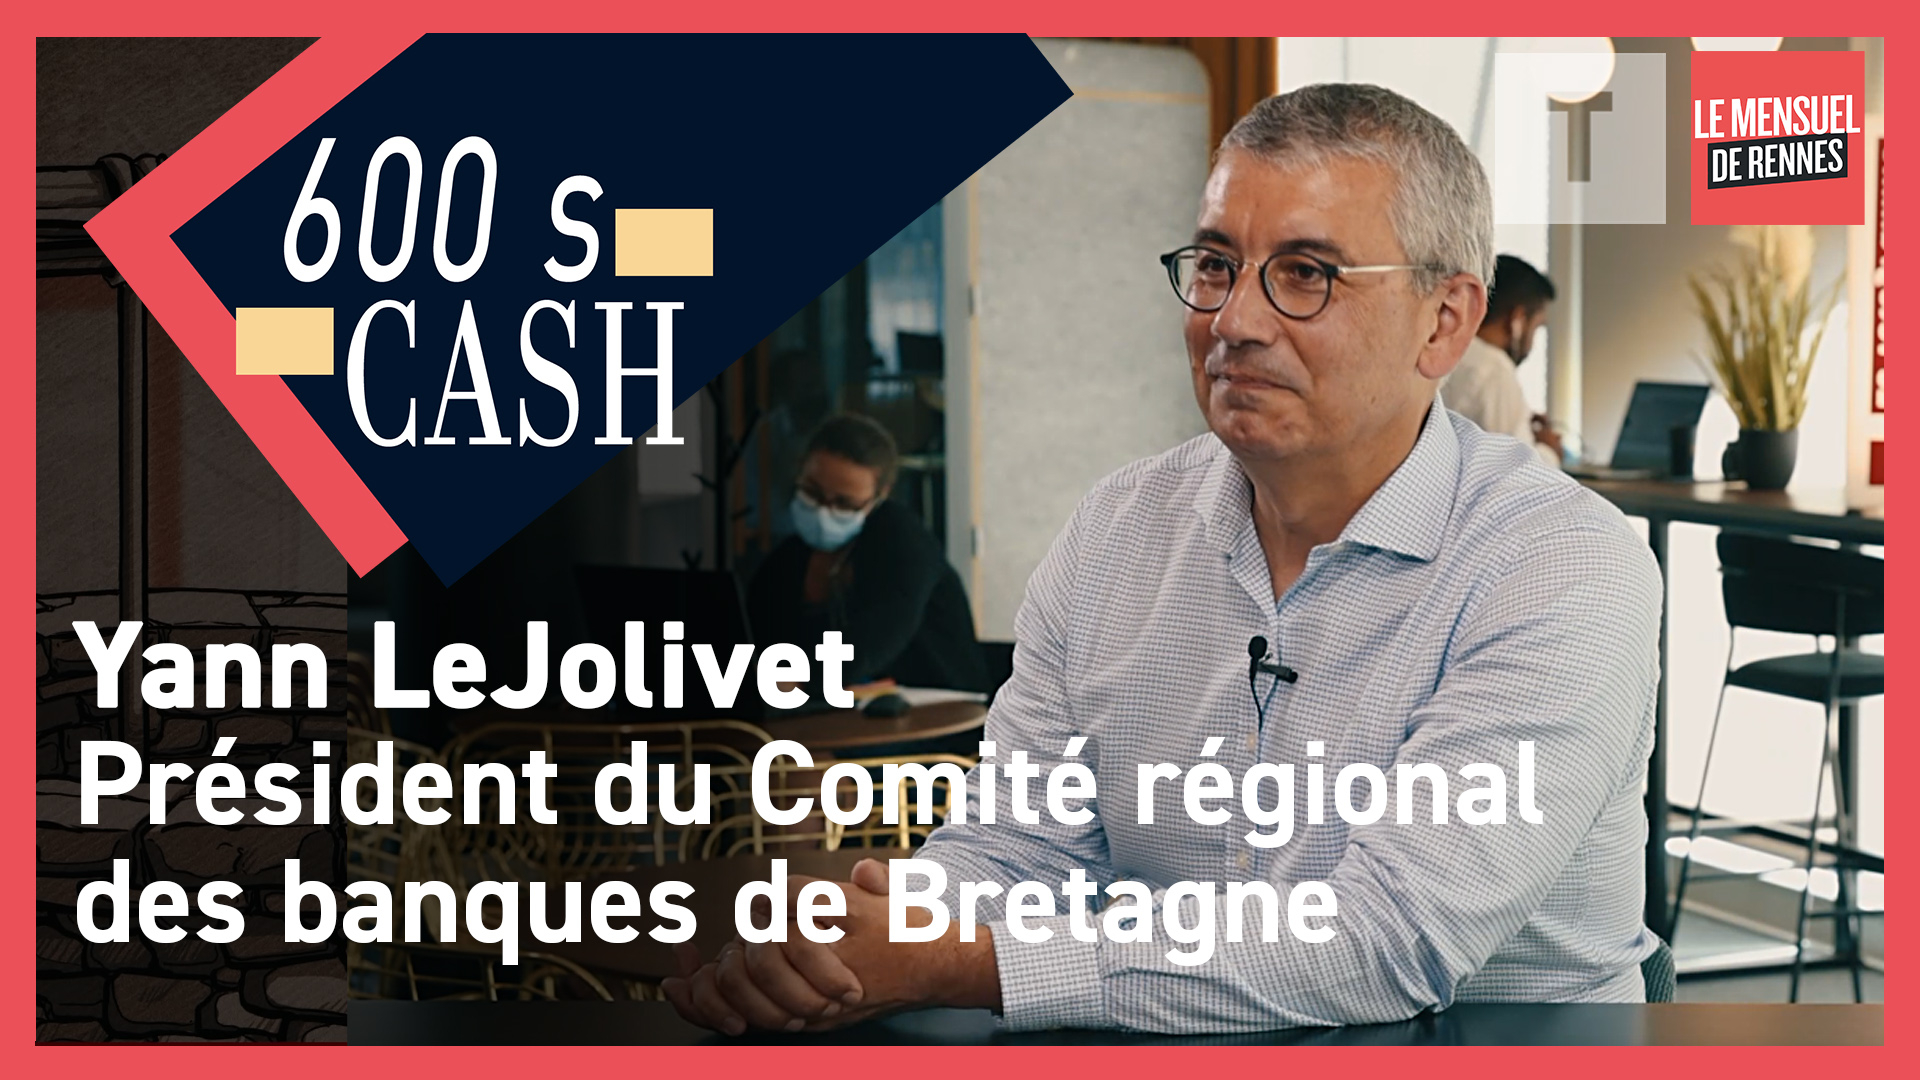 600 s Cash - Yann Lejolivet, président du Comité régional des banques de Bretagne (Le Télégramme)